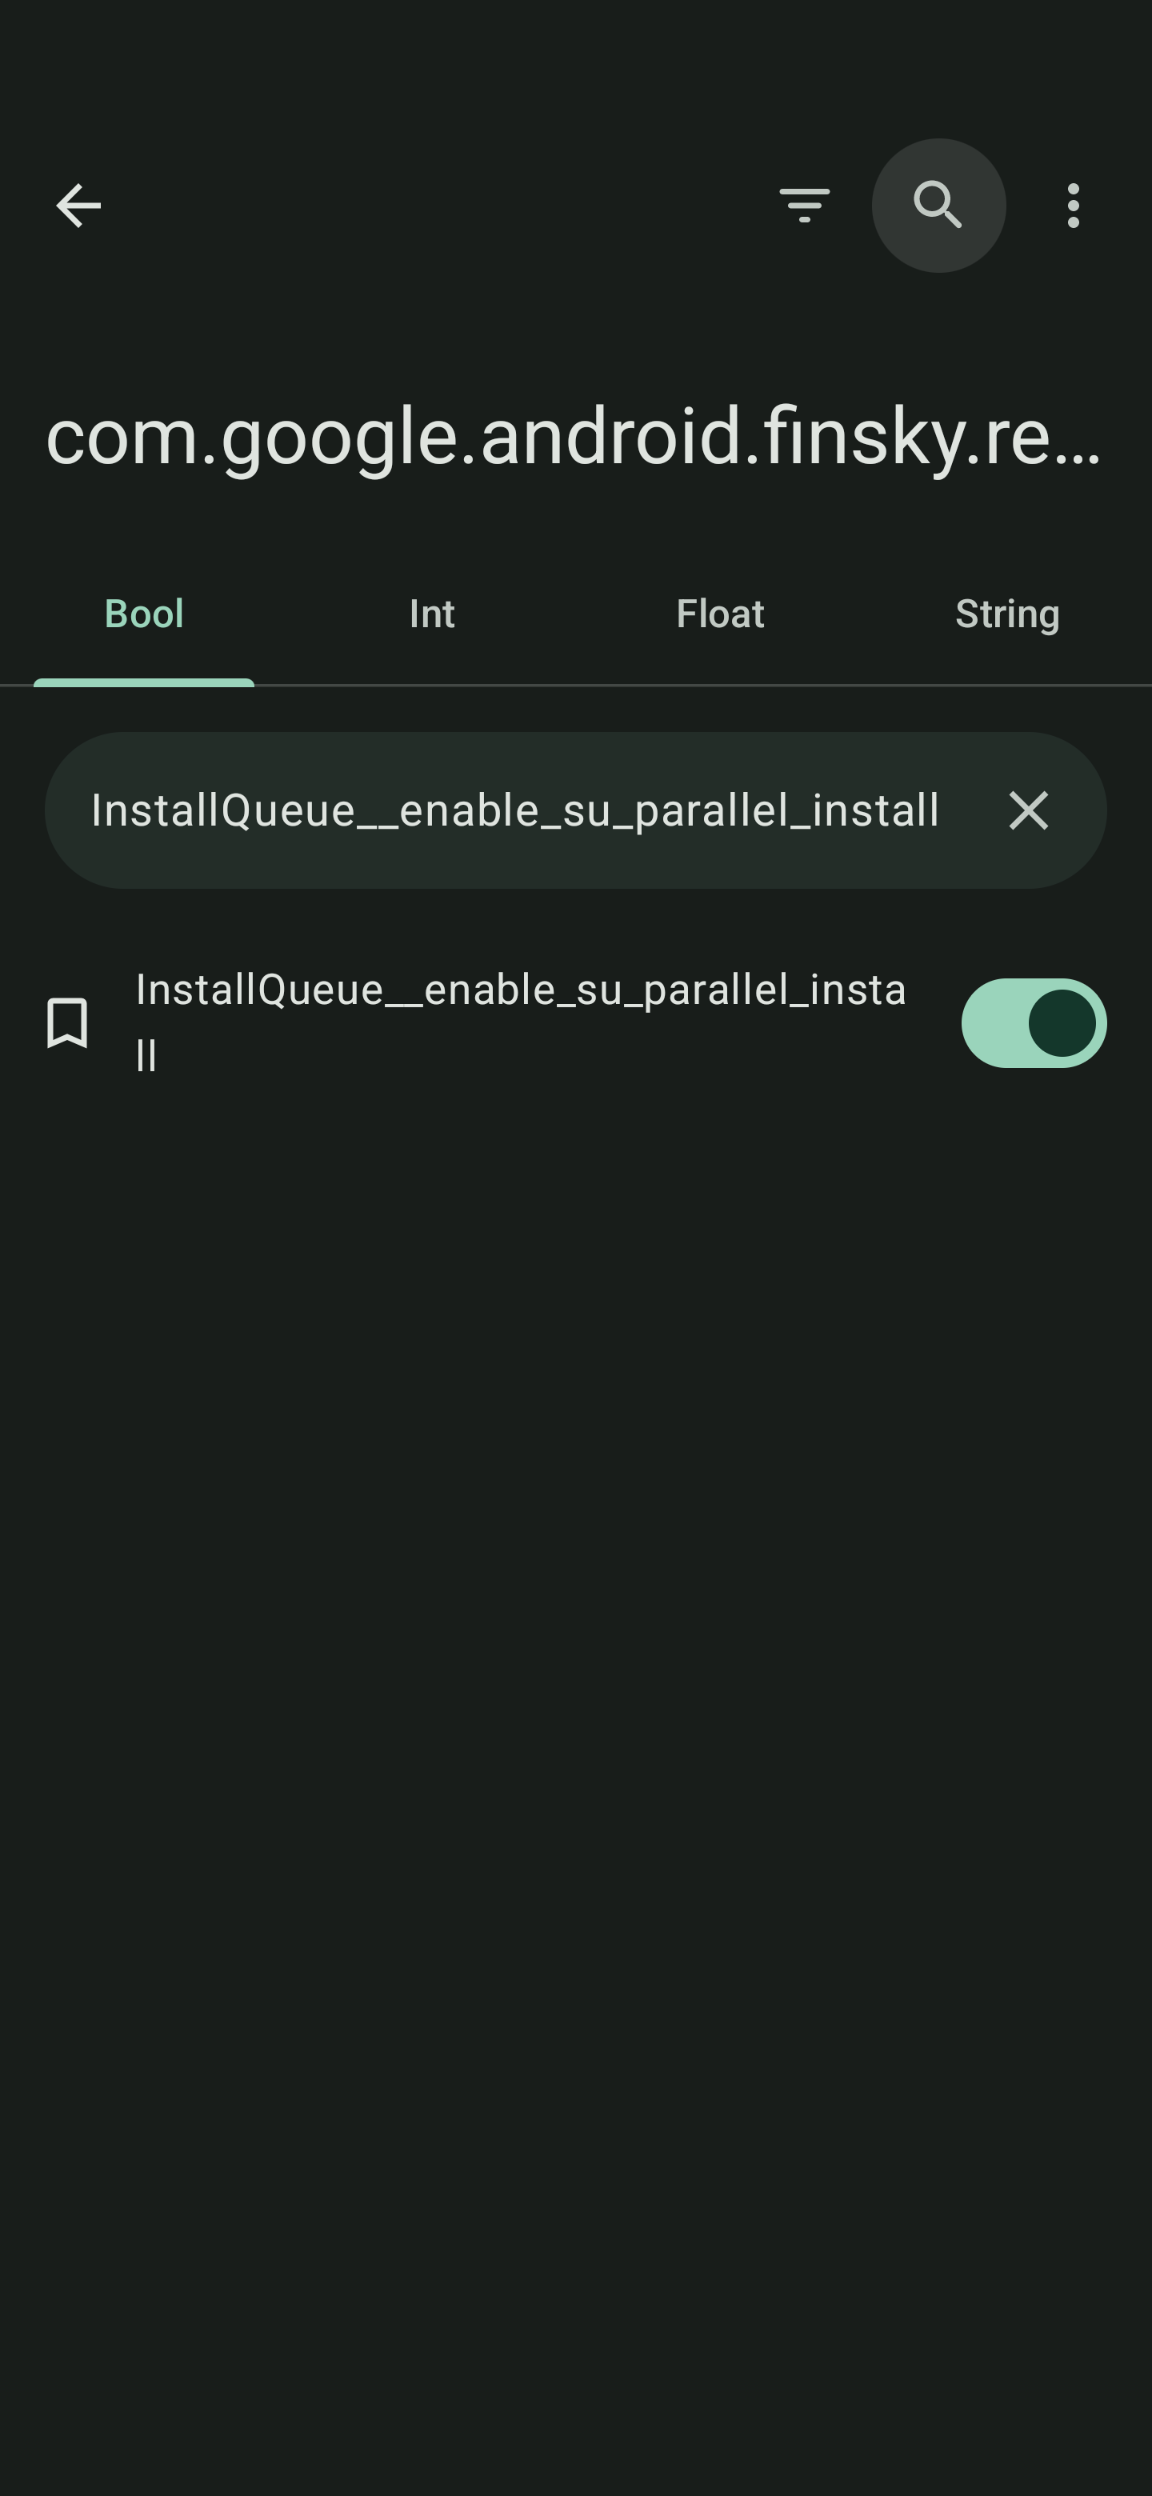 InstallQueue__enable_su_parallel_install